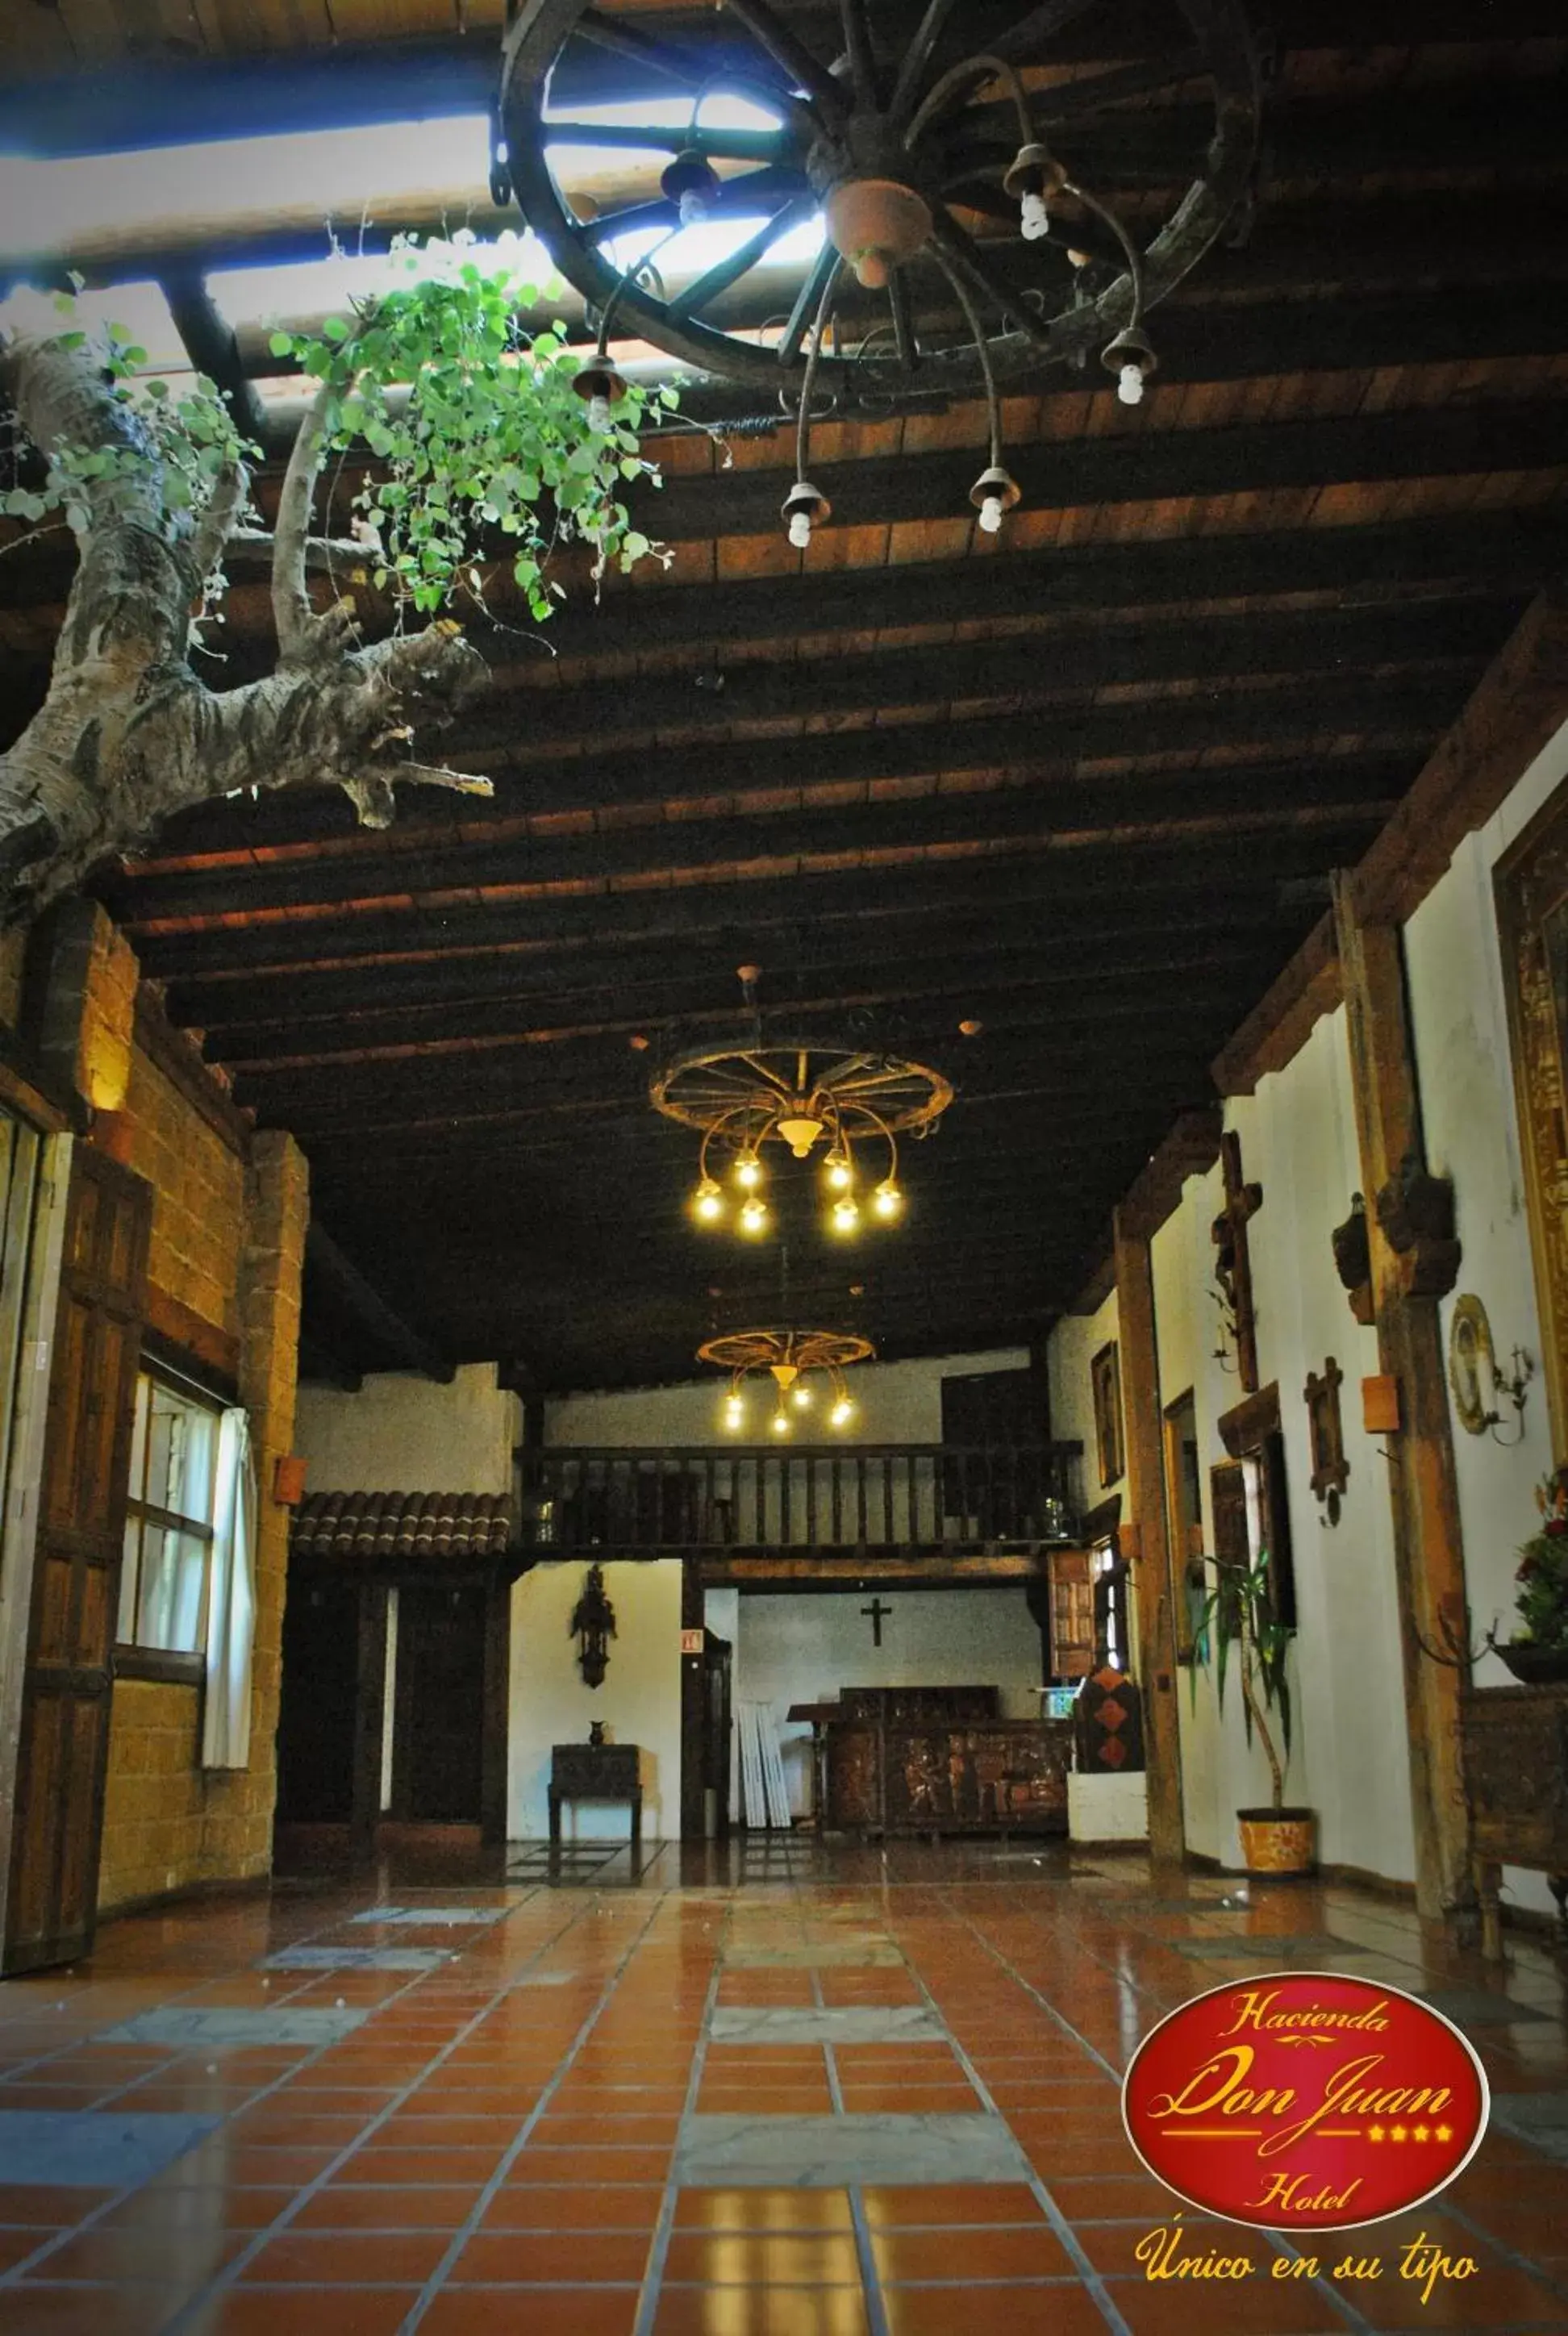 On site, Lobby/Reception in Hotel Hacienda Don Juan San Cristobal de las Casas Chiapas